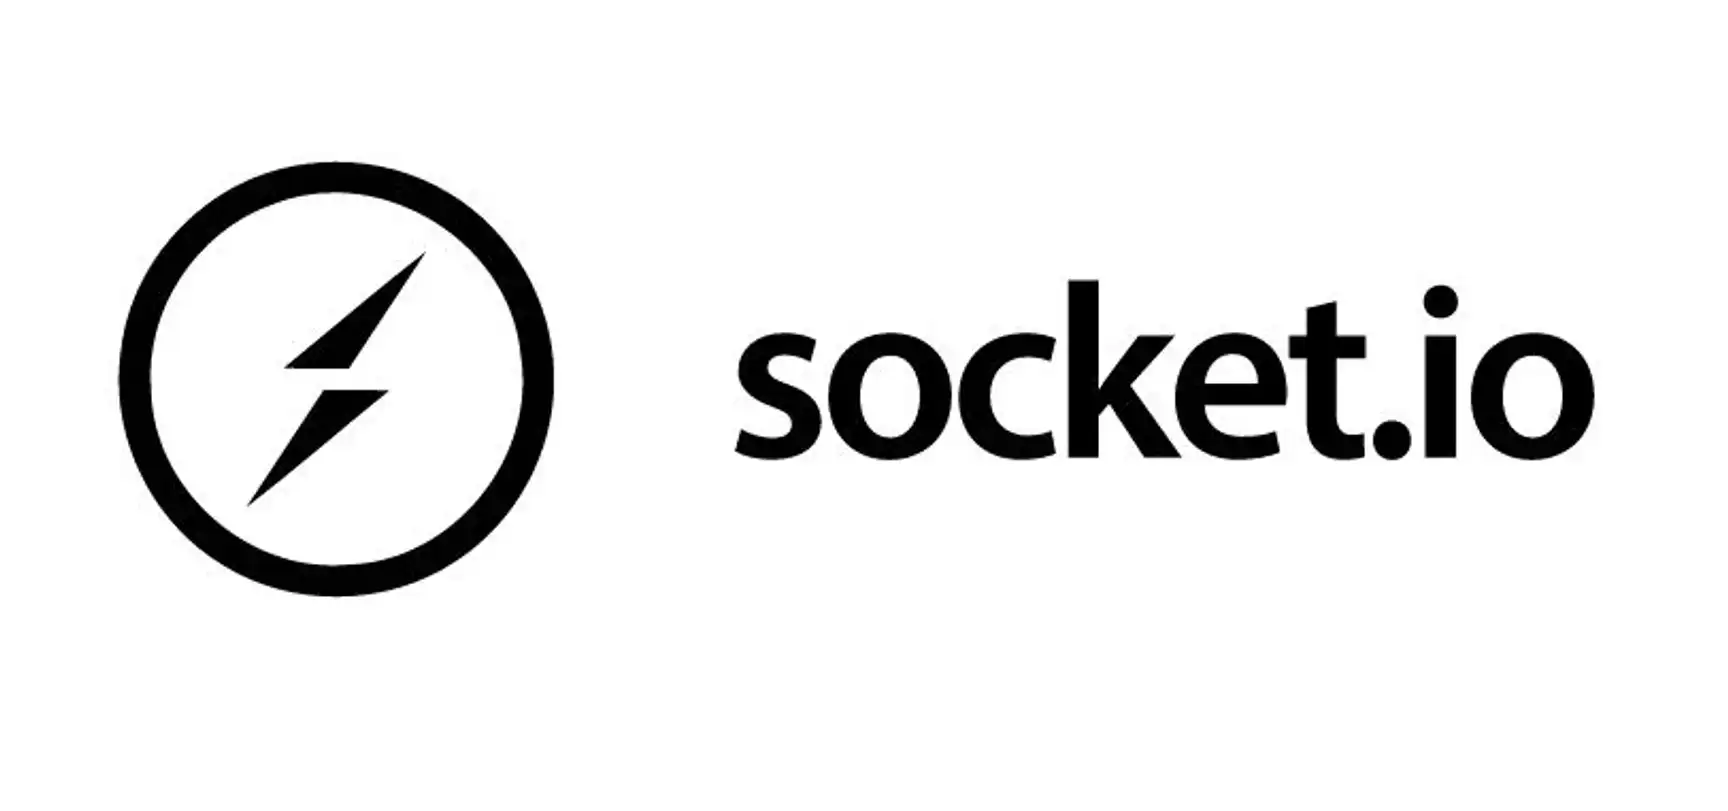 Mengenal Socket.IO Komunikasi Real-Time antara Klien dan Server